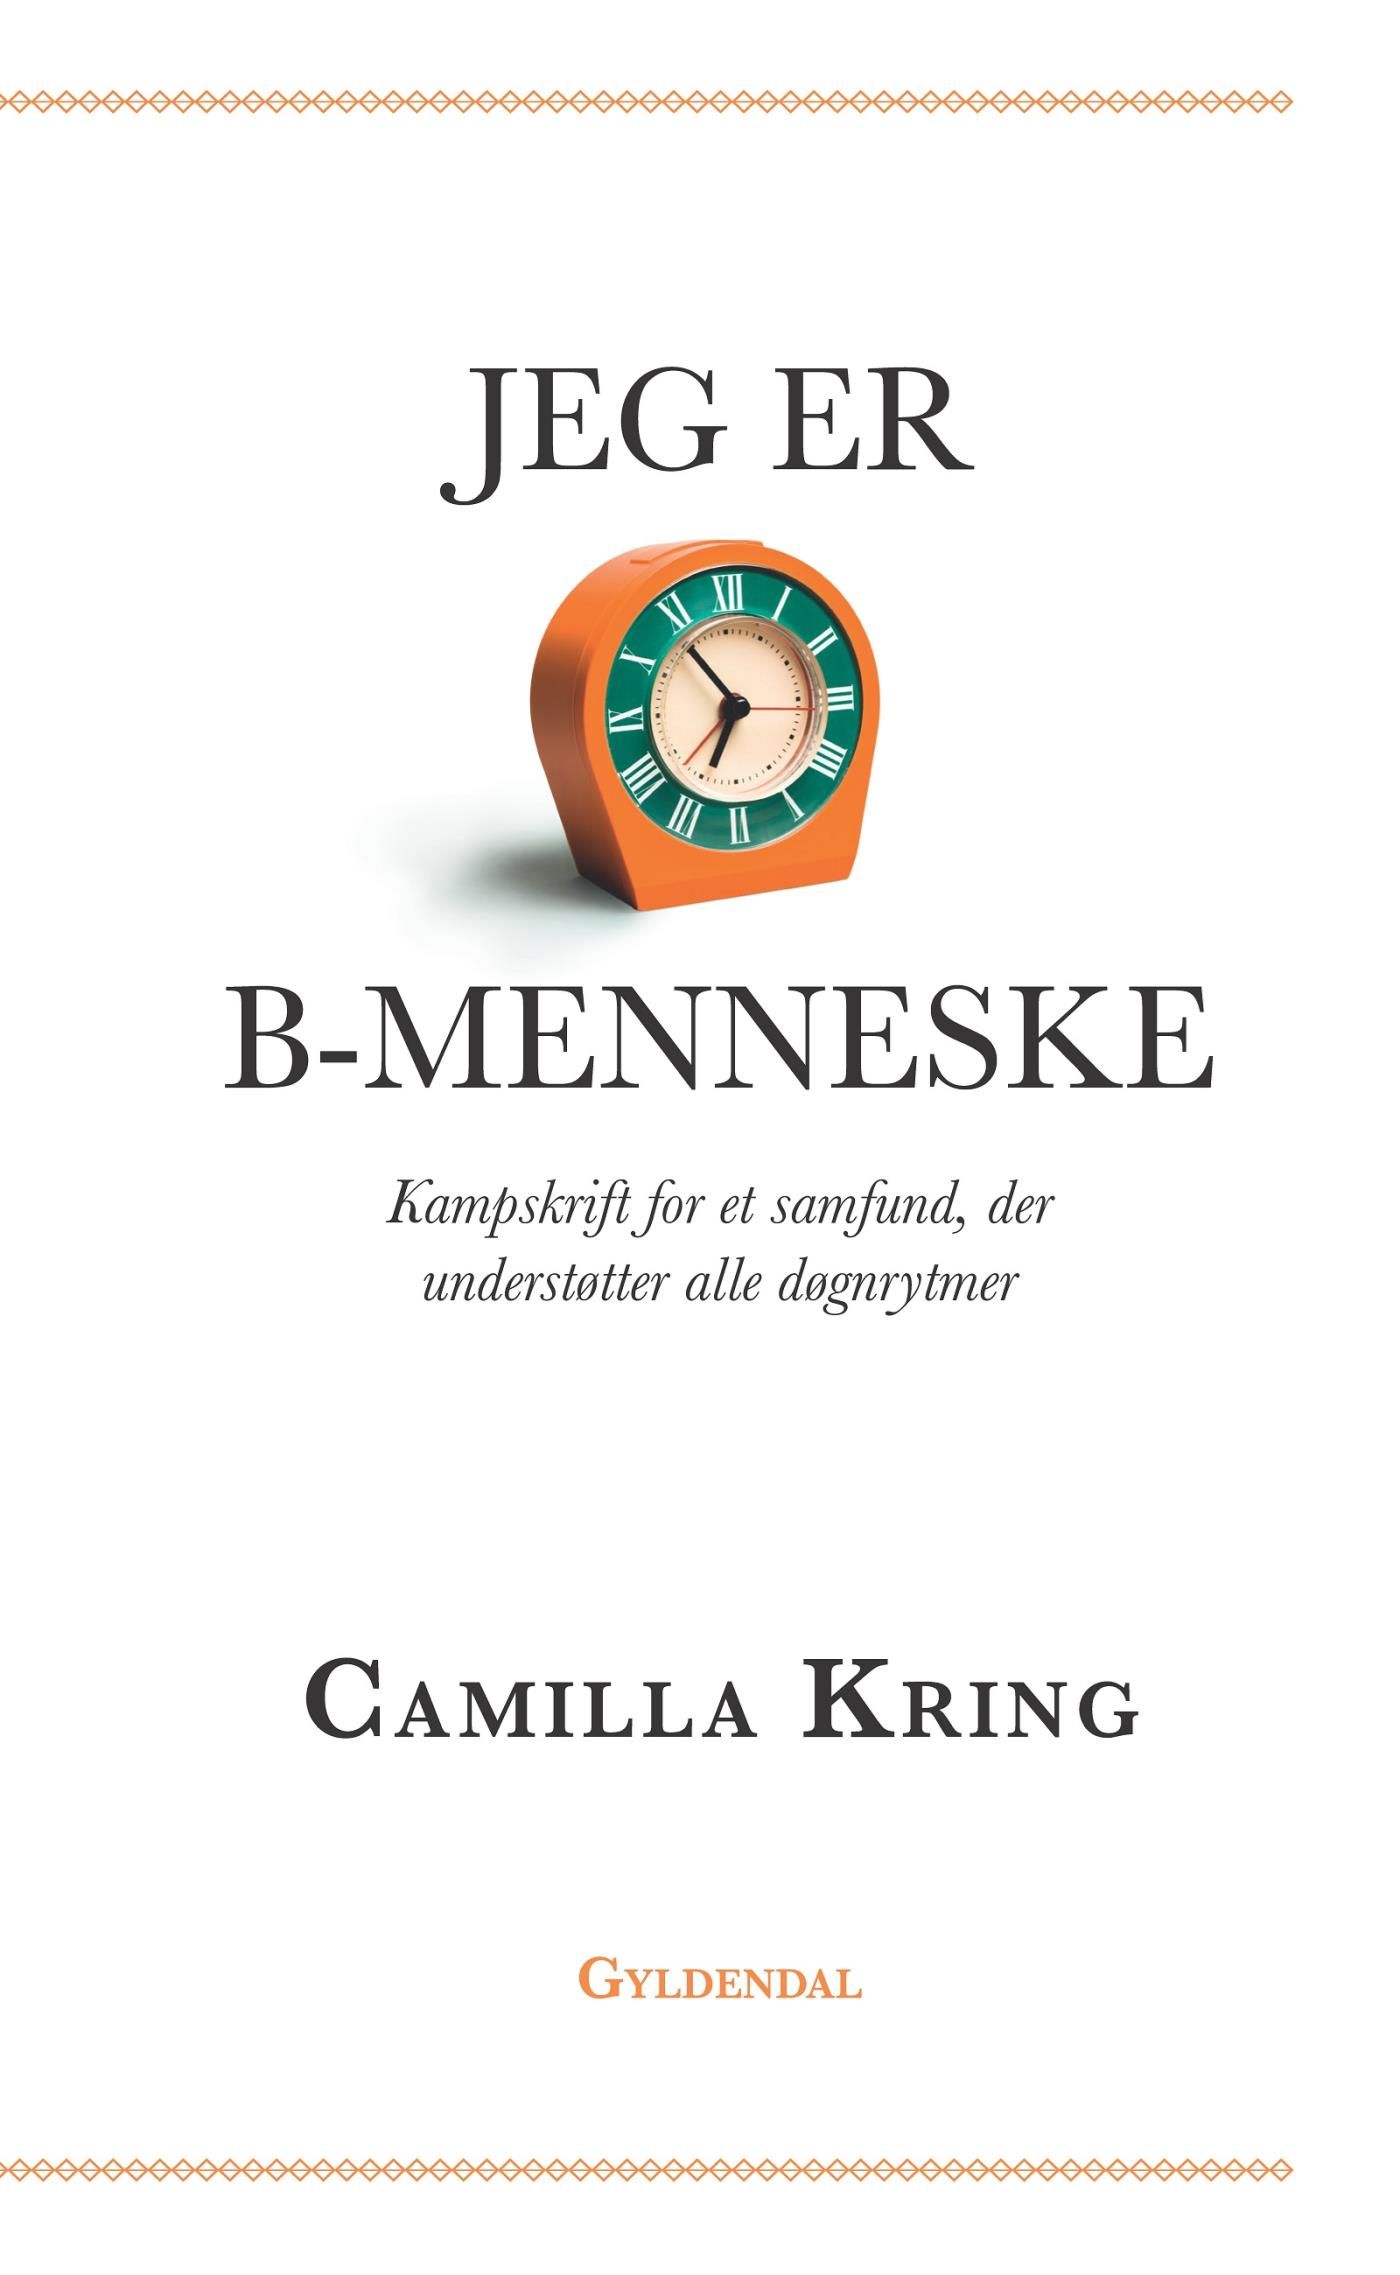 Jeg er B-menneske, e-bog af Camilla Kring